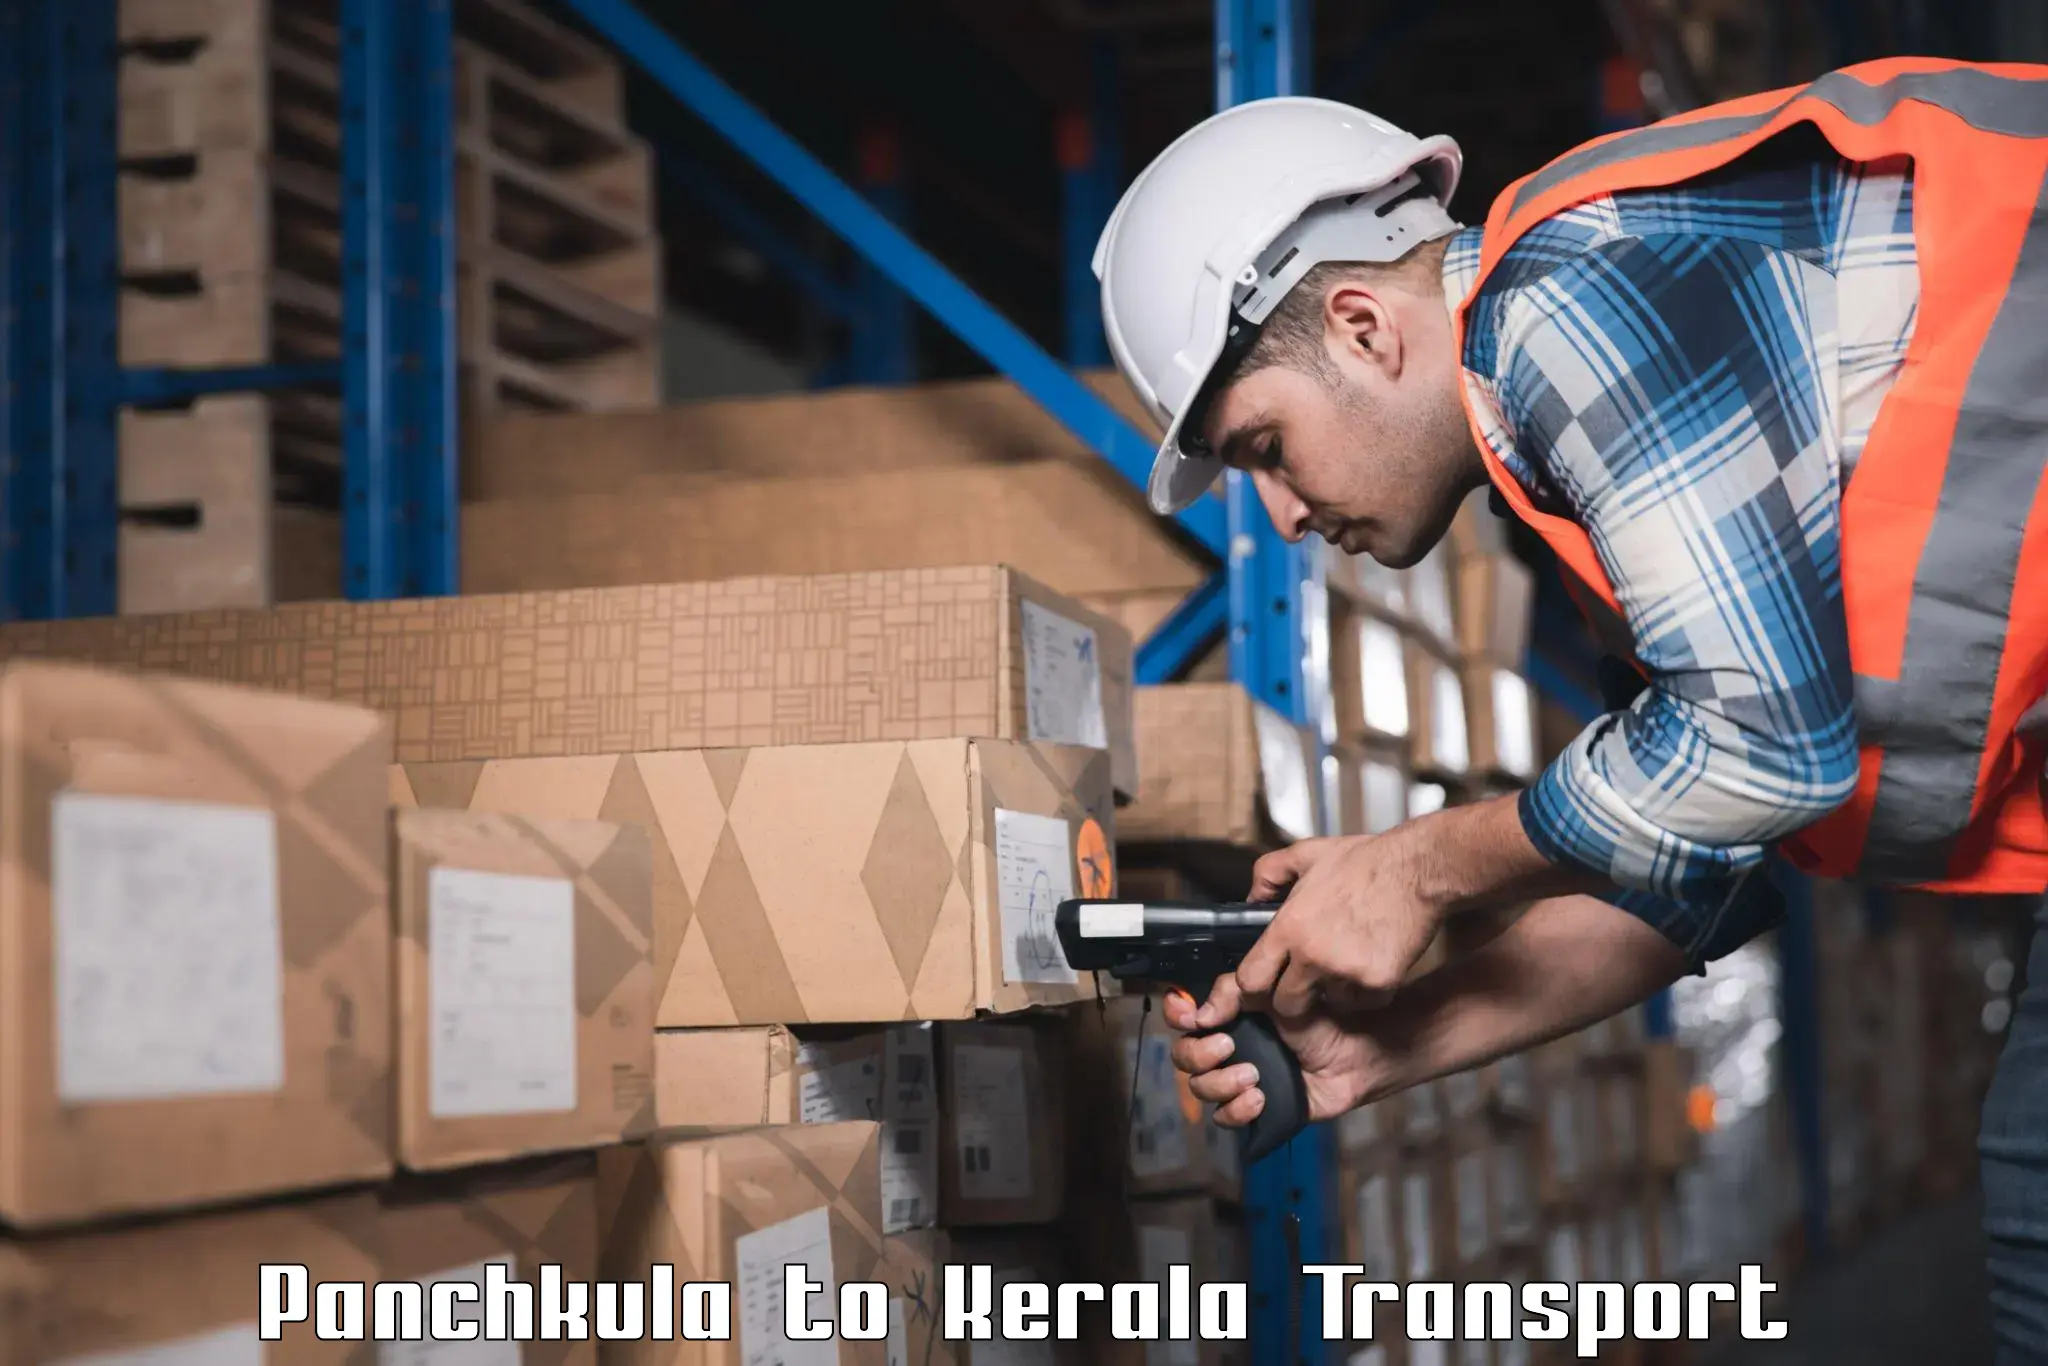 Container transport service Panchkula to Kanjiramattom